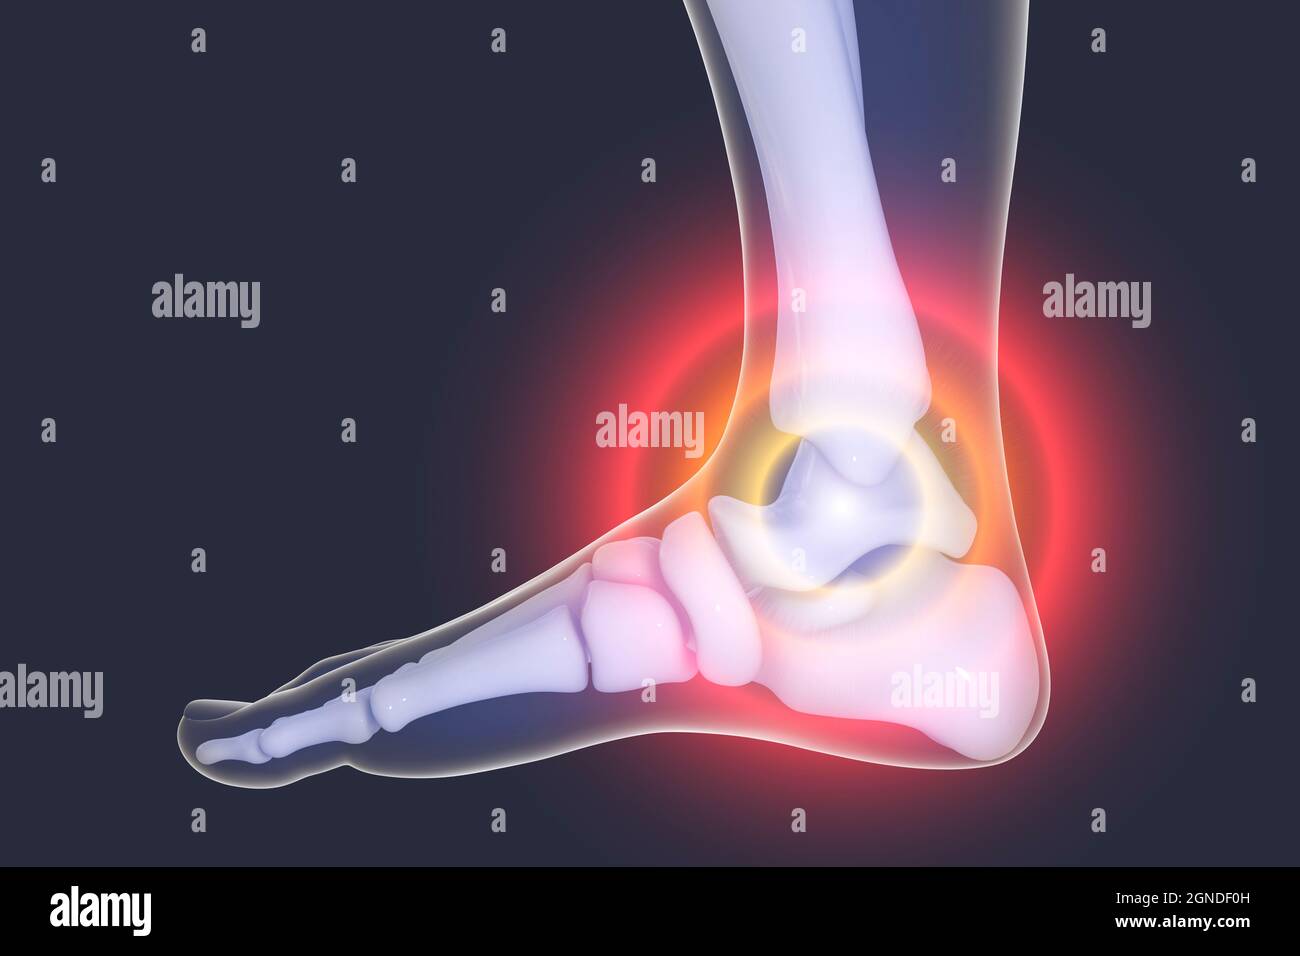 Foot pain, illustration Stock Photo